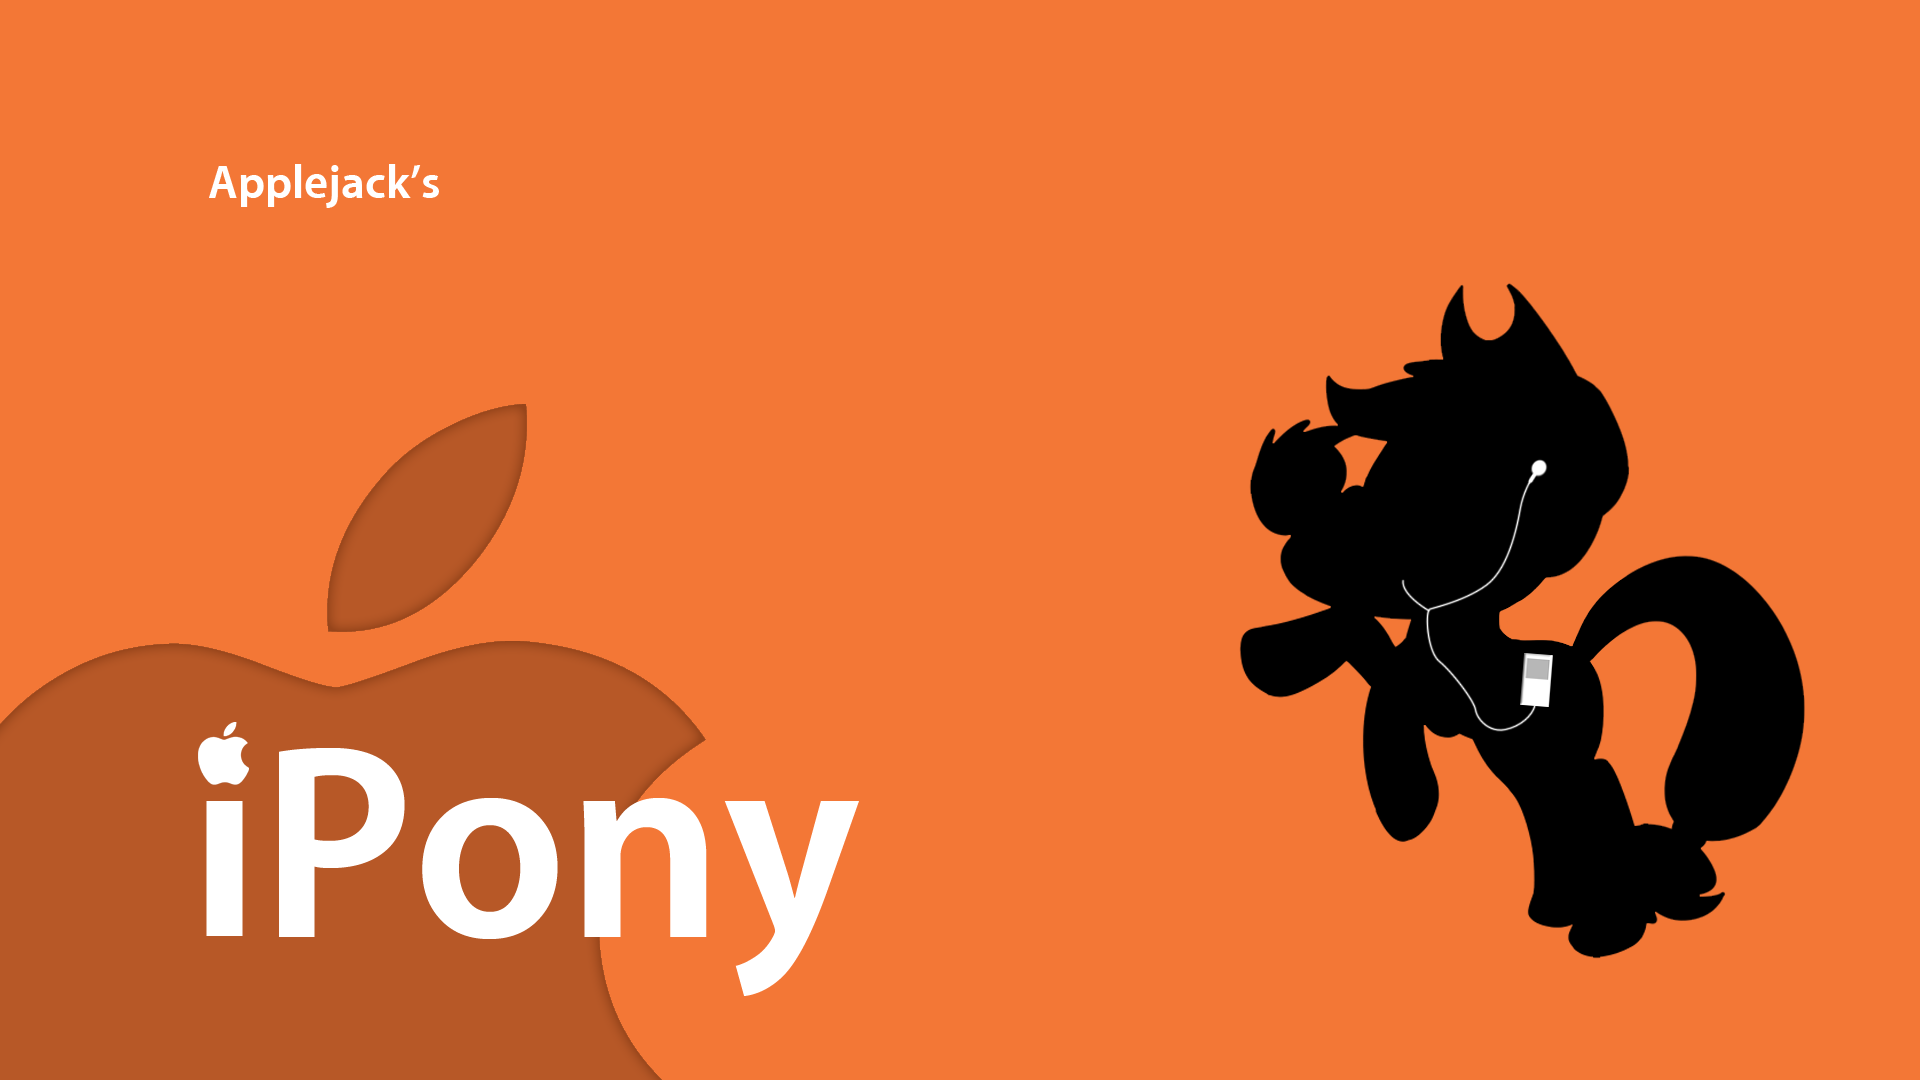 Applejack's iPony by Eniacc